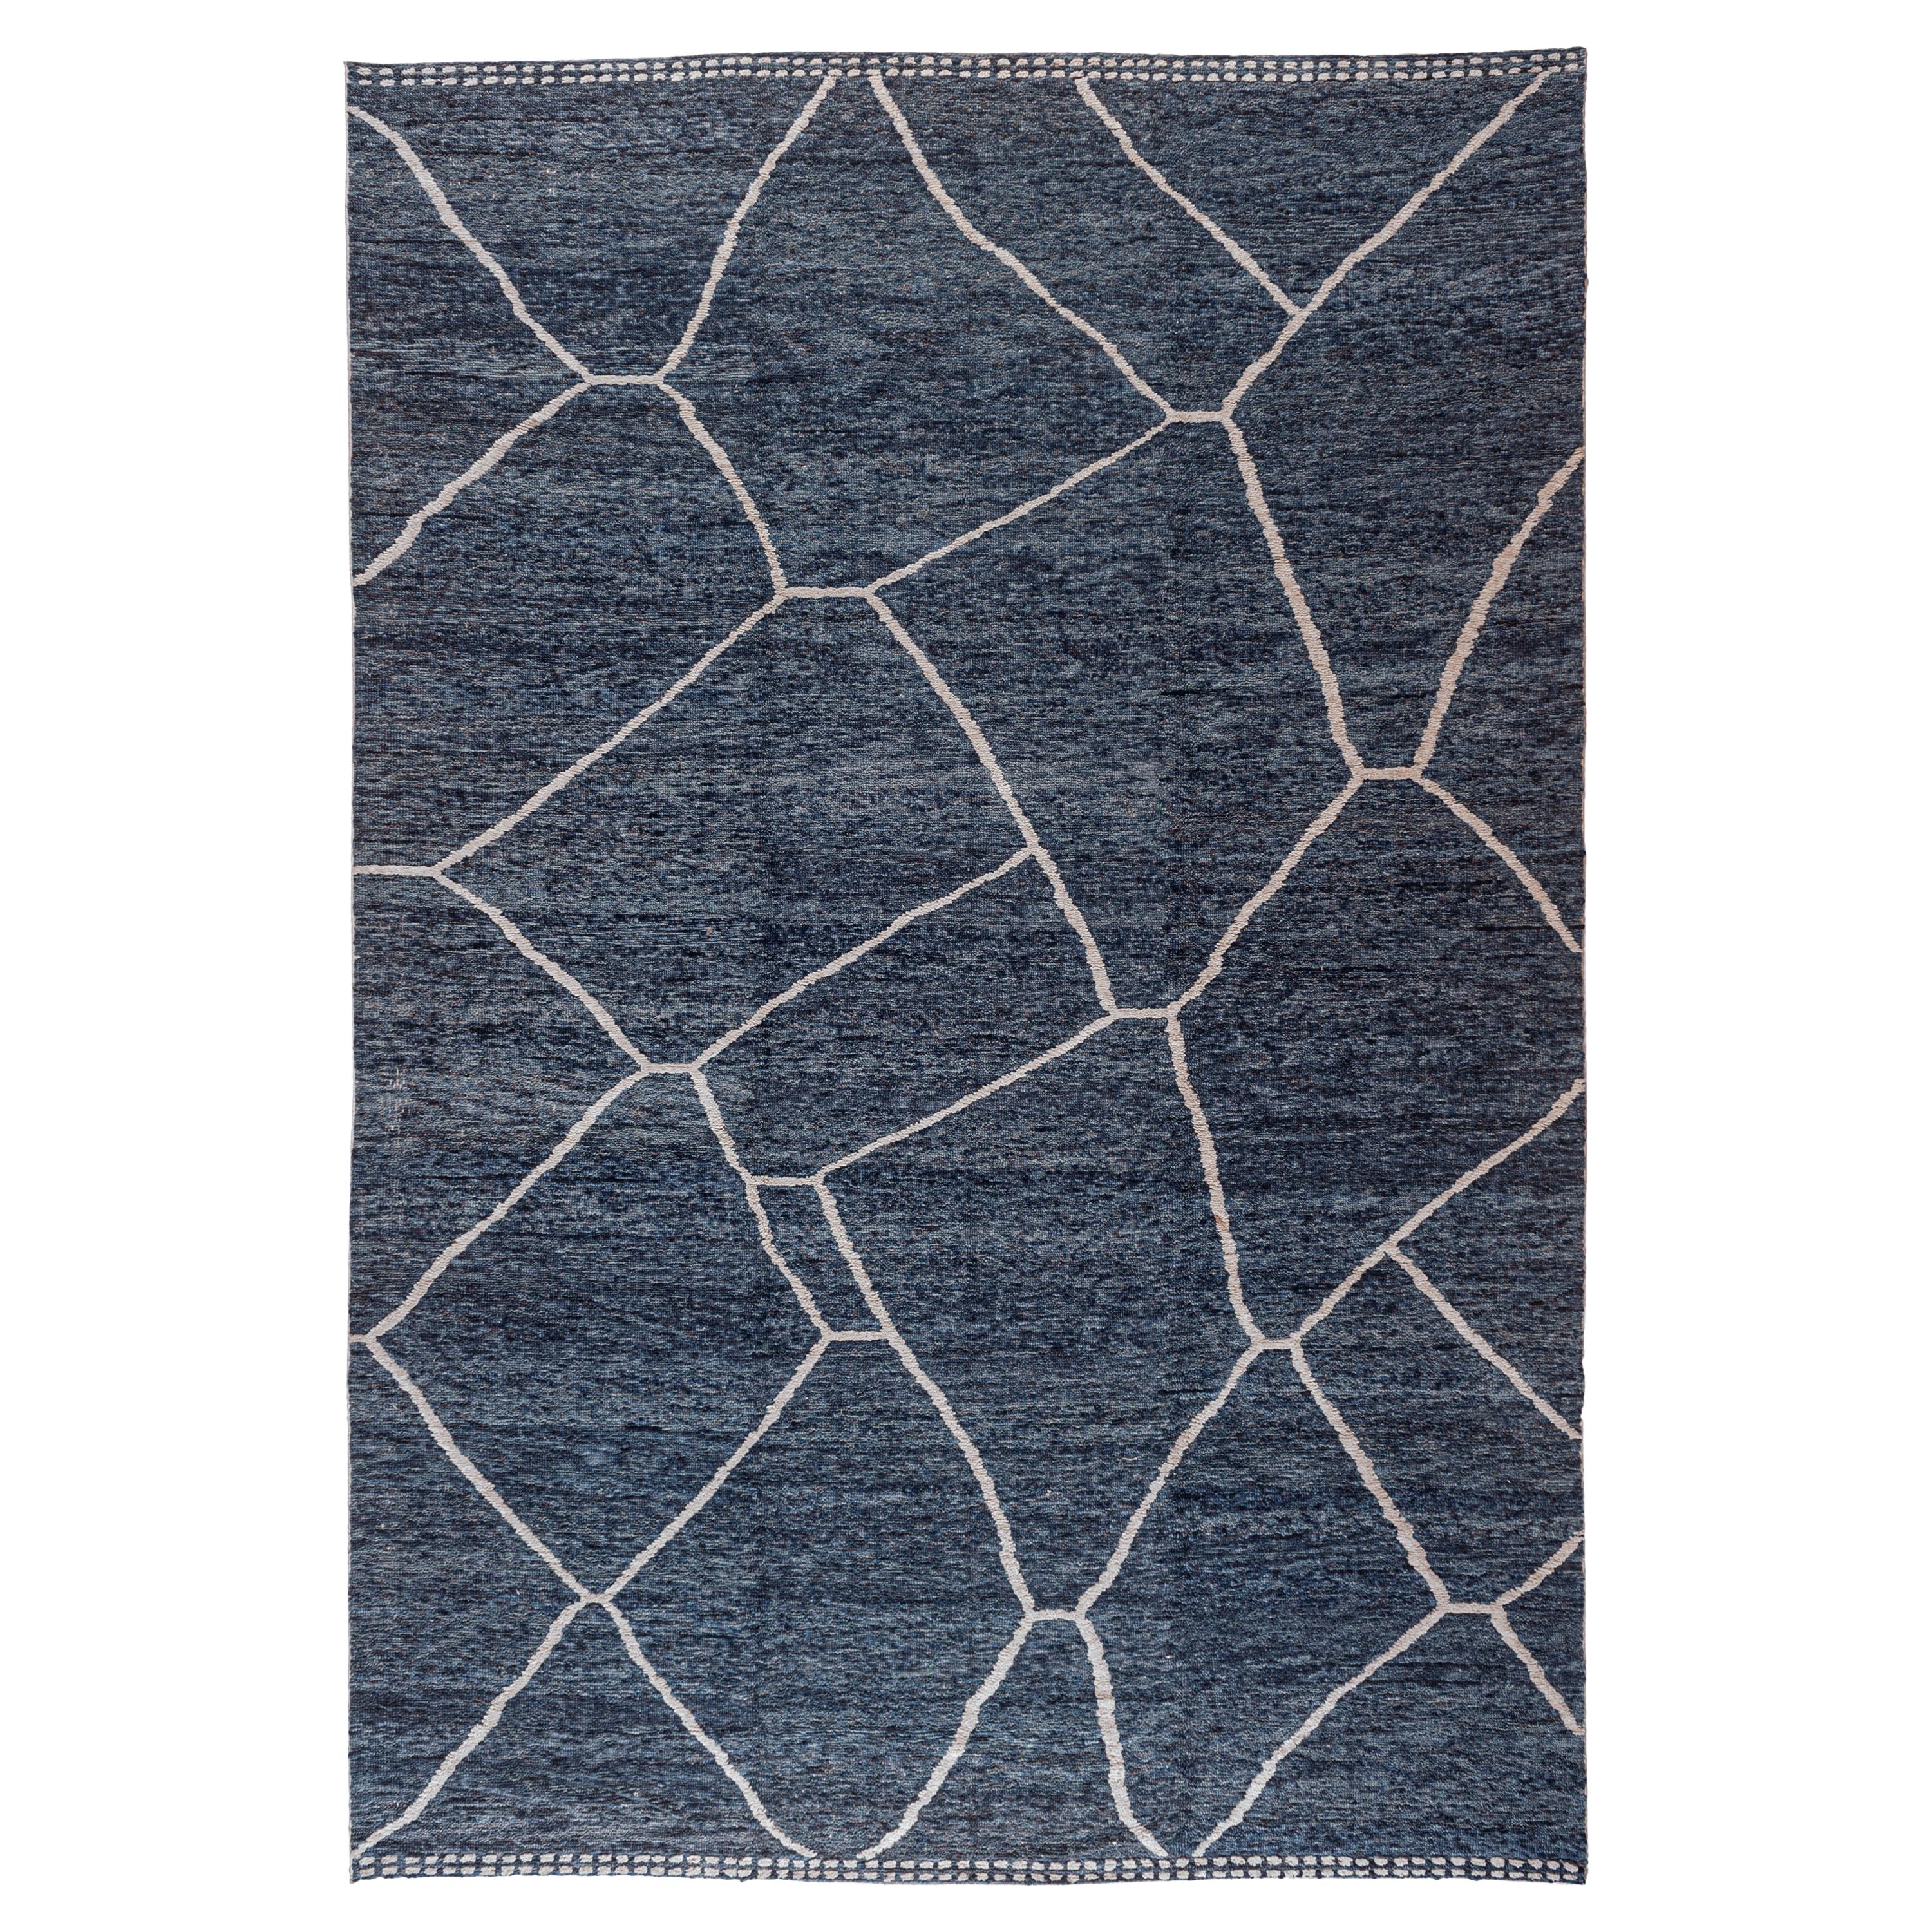 Blauer blauer marokkanisch inspirierter Teppich